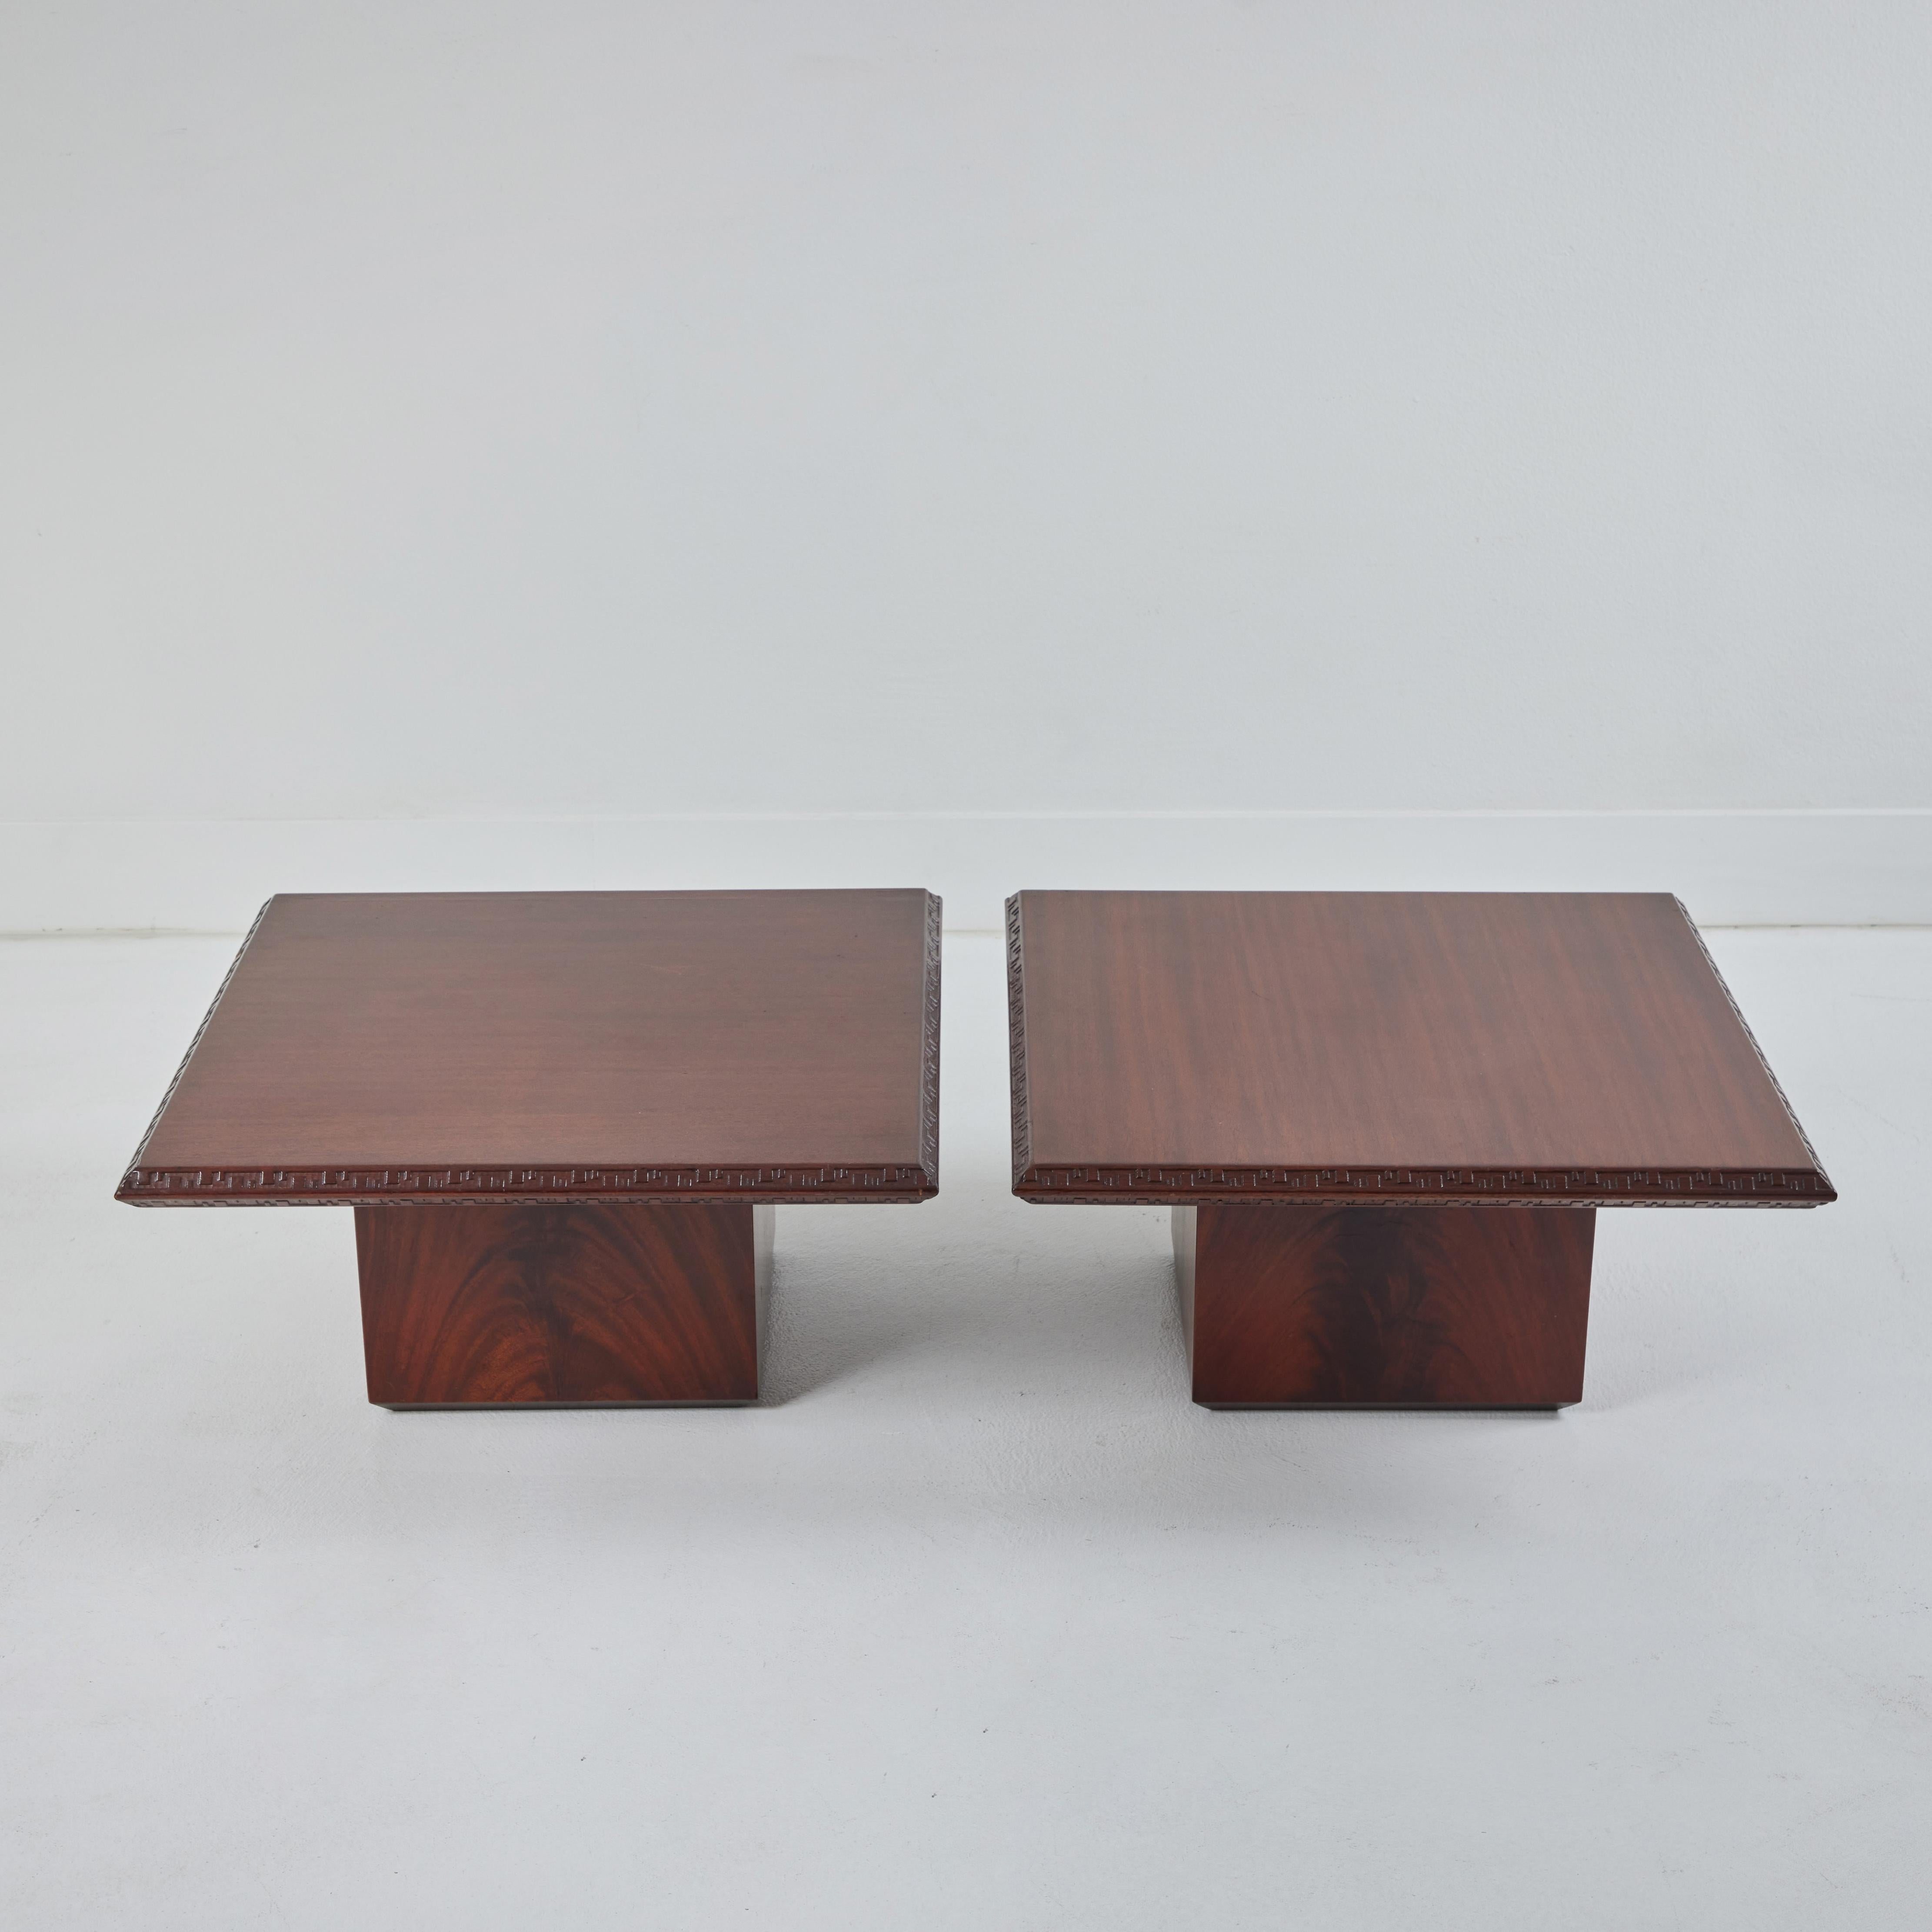 Voici une paire de tables basses de cocktail en acajou conçues par Frank Loyd Wright dans le cadre de sa collection Taliesin. Conçues en 1955 pour Heritage Henredon, ces tables sont magnifiquement construites. Fabriquées en acajou, ces tables basses